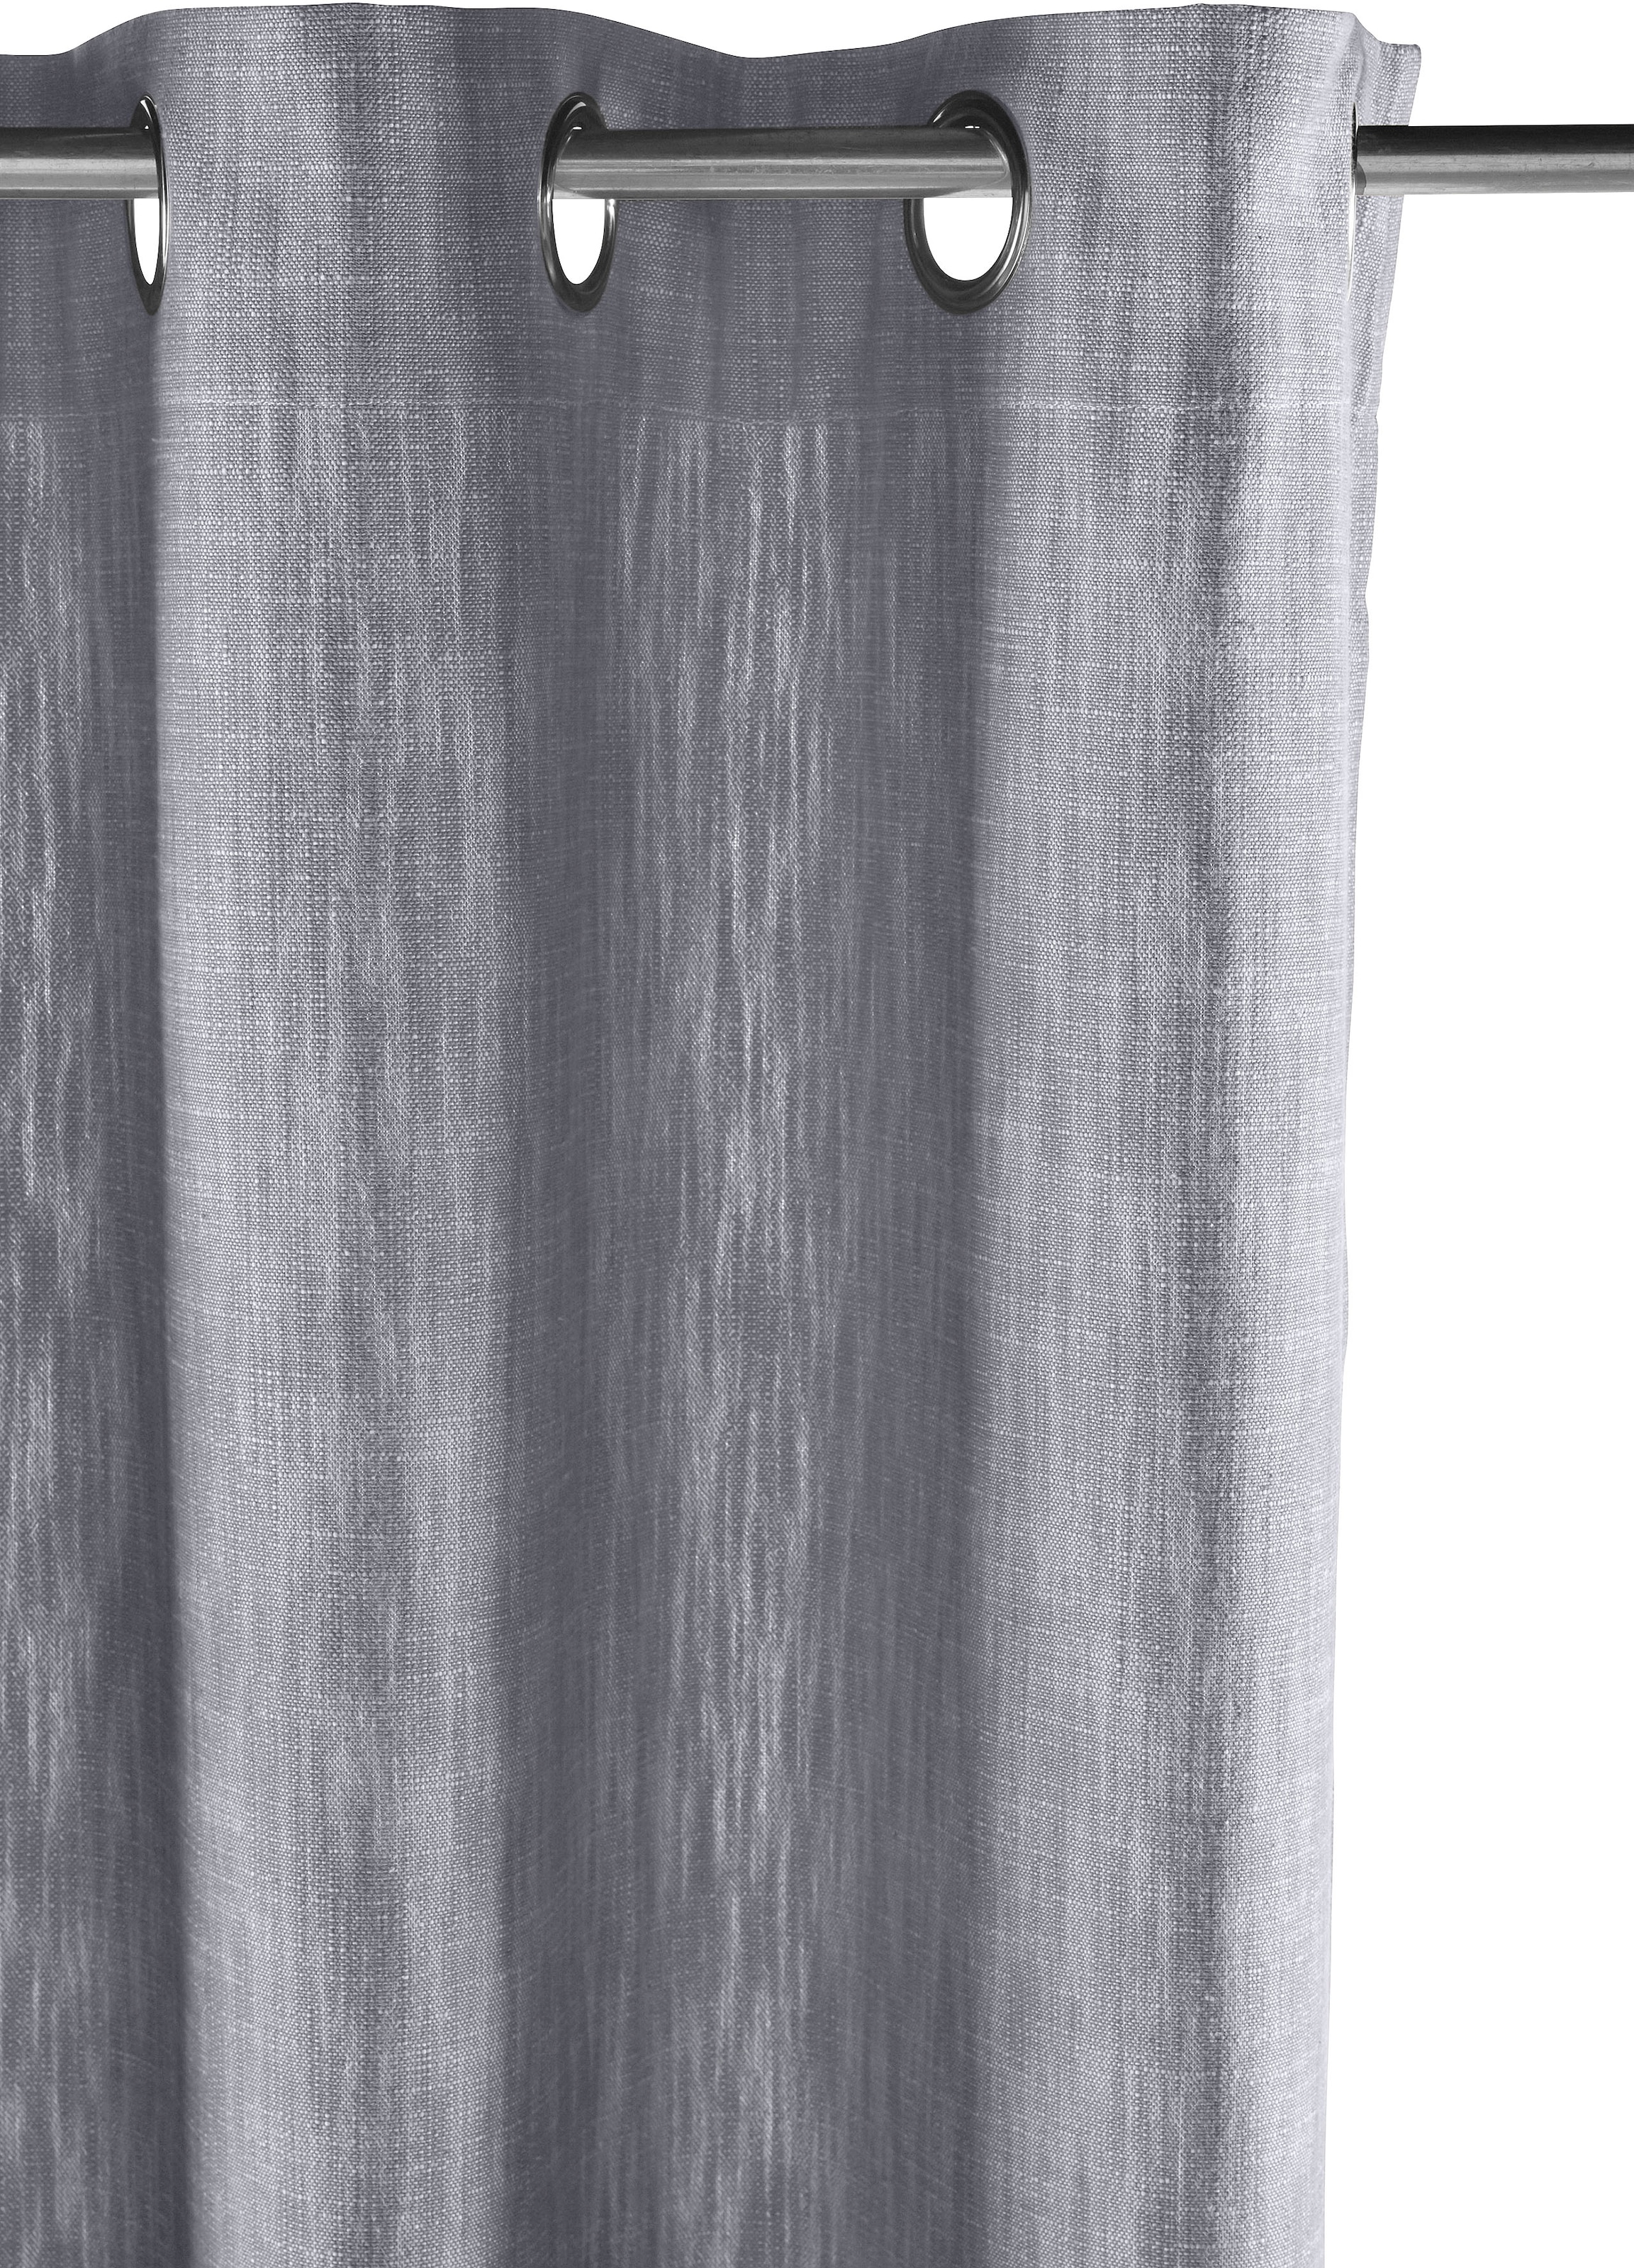 elbgestoeber Vorhang »Elbgarn«, (1 St.), Optik, blickdicht, basic Raten Bio Leinen auf Baumwolle, bestellen monochrom